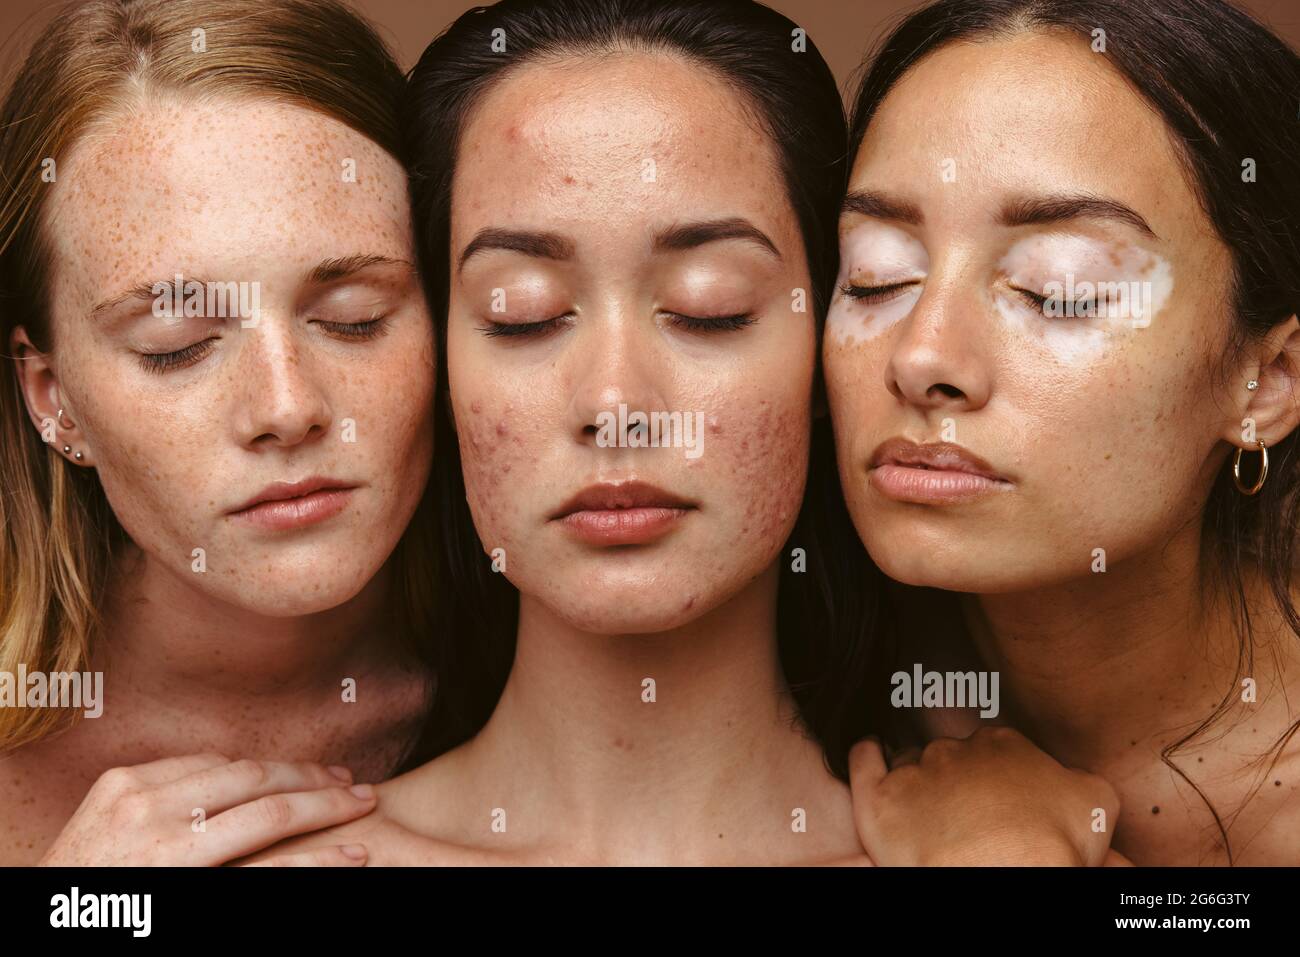 Ritratto di tre donne con problemi di pelle insieme su sfondo marrone. Primo piano di donne che hanno condizioni di pelle con gli occhi chiusi Foto Stock